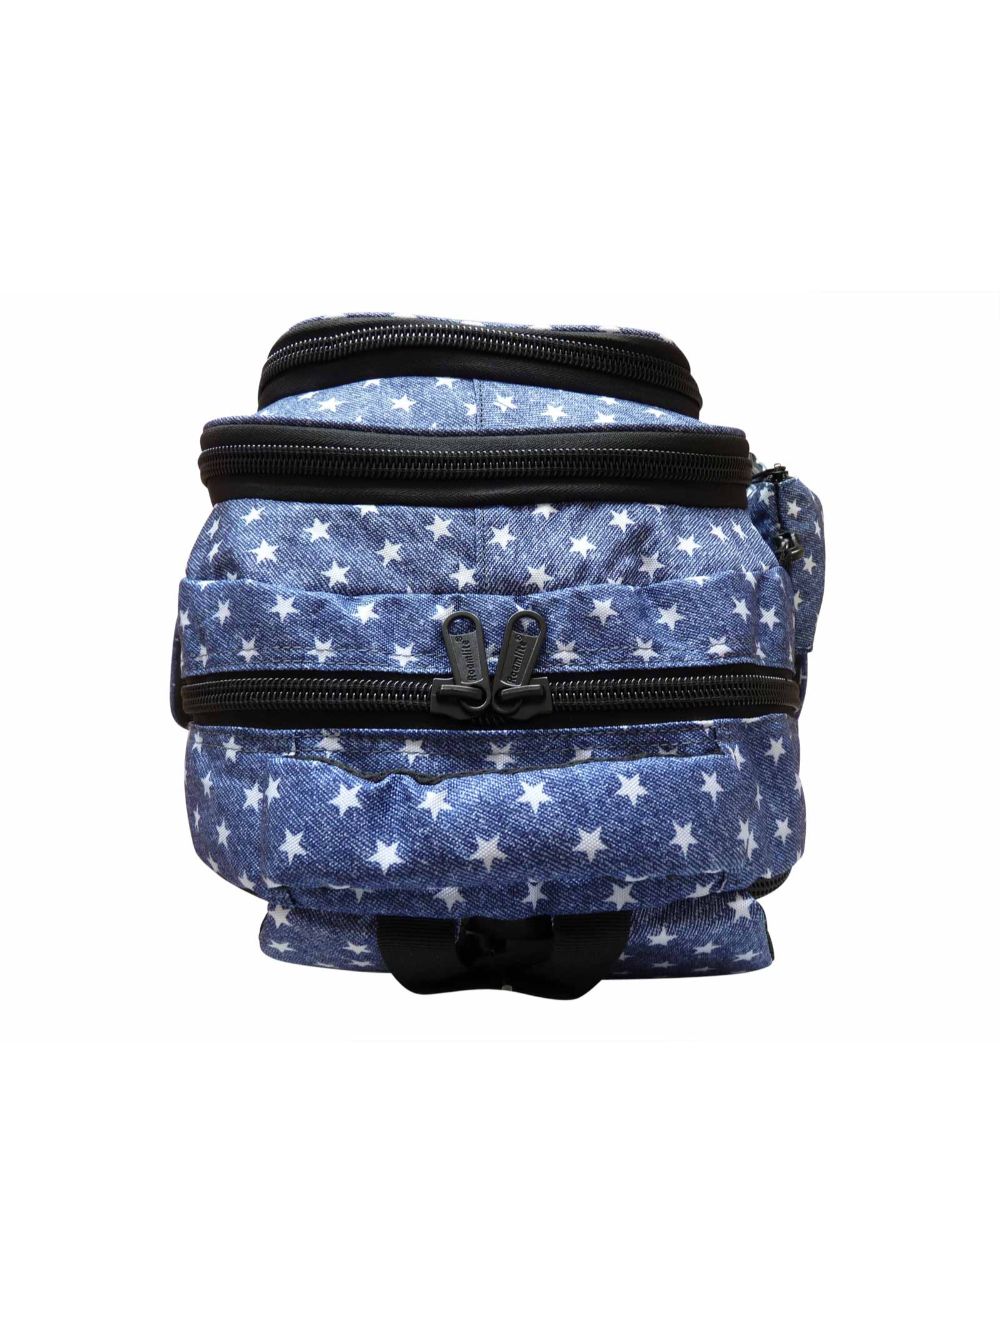 Roamlite Childrens Backpack Blue Star pattern RL840 top